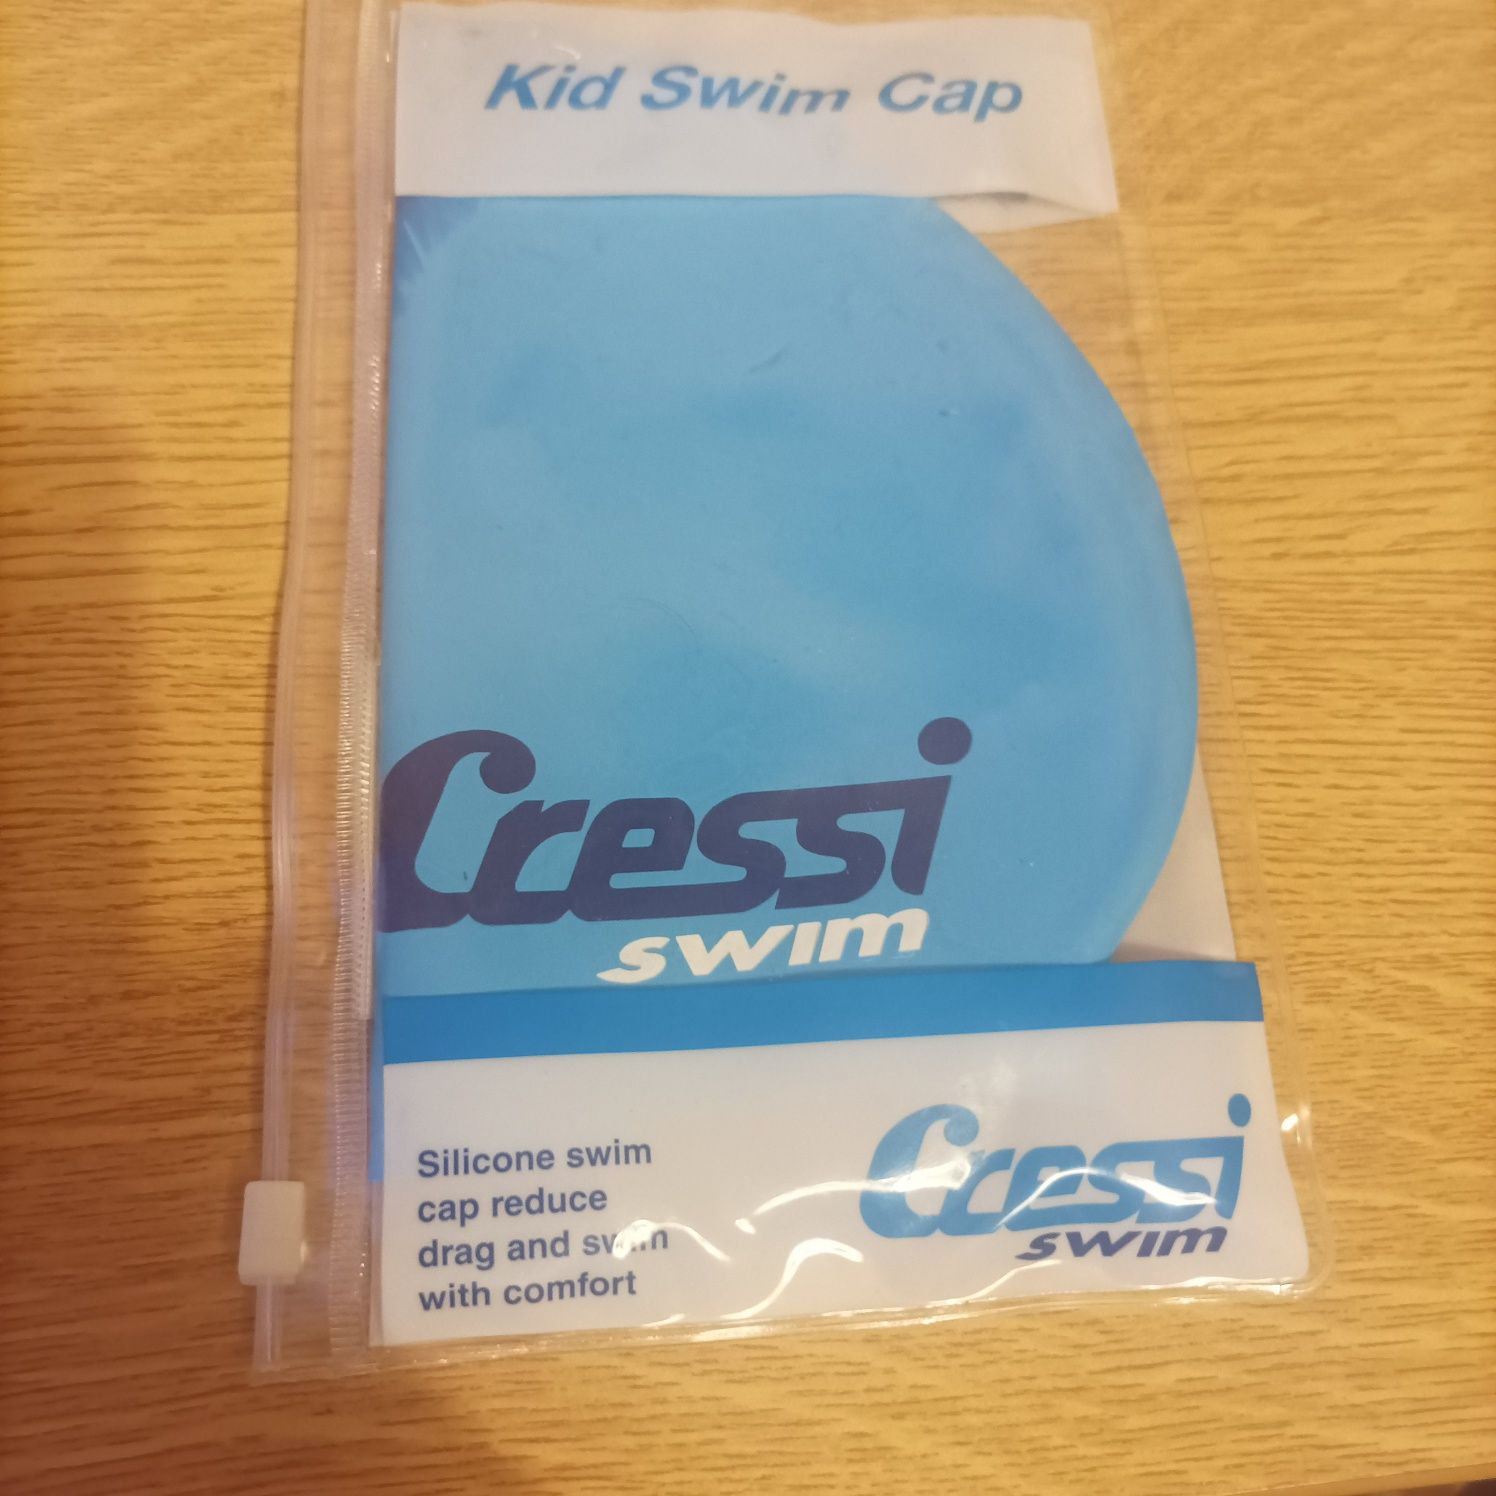 Czepek dziecięcy do pływania Cressi Swim